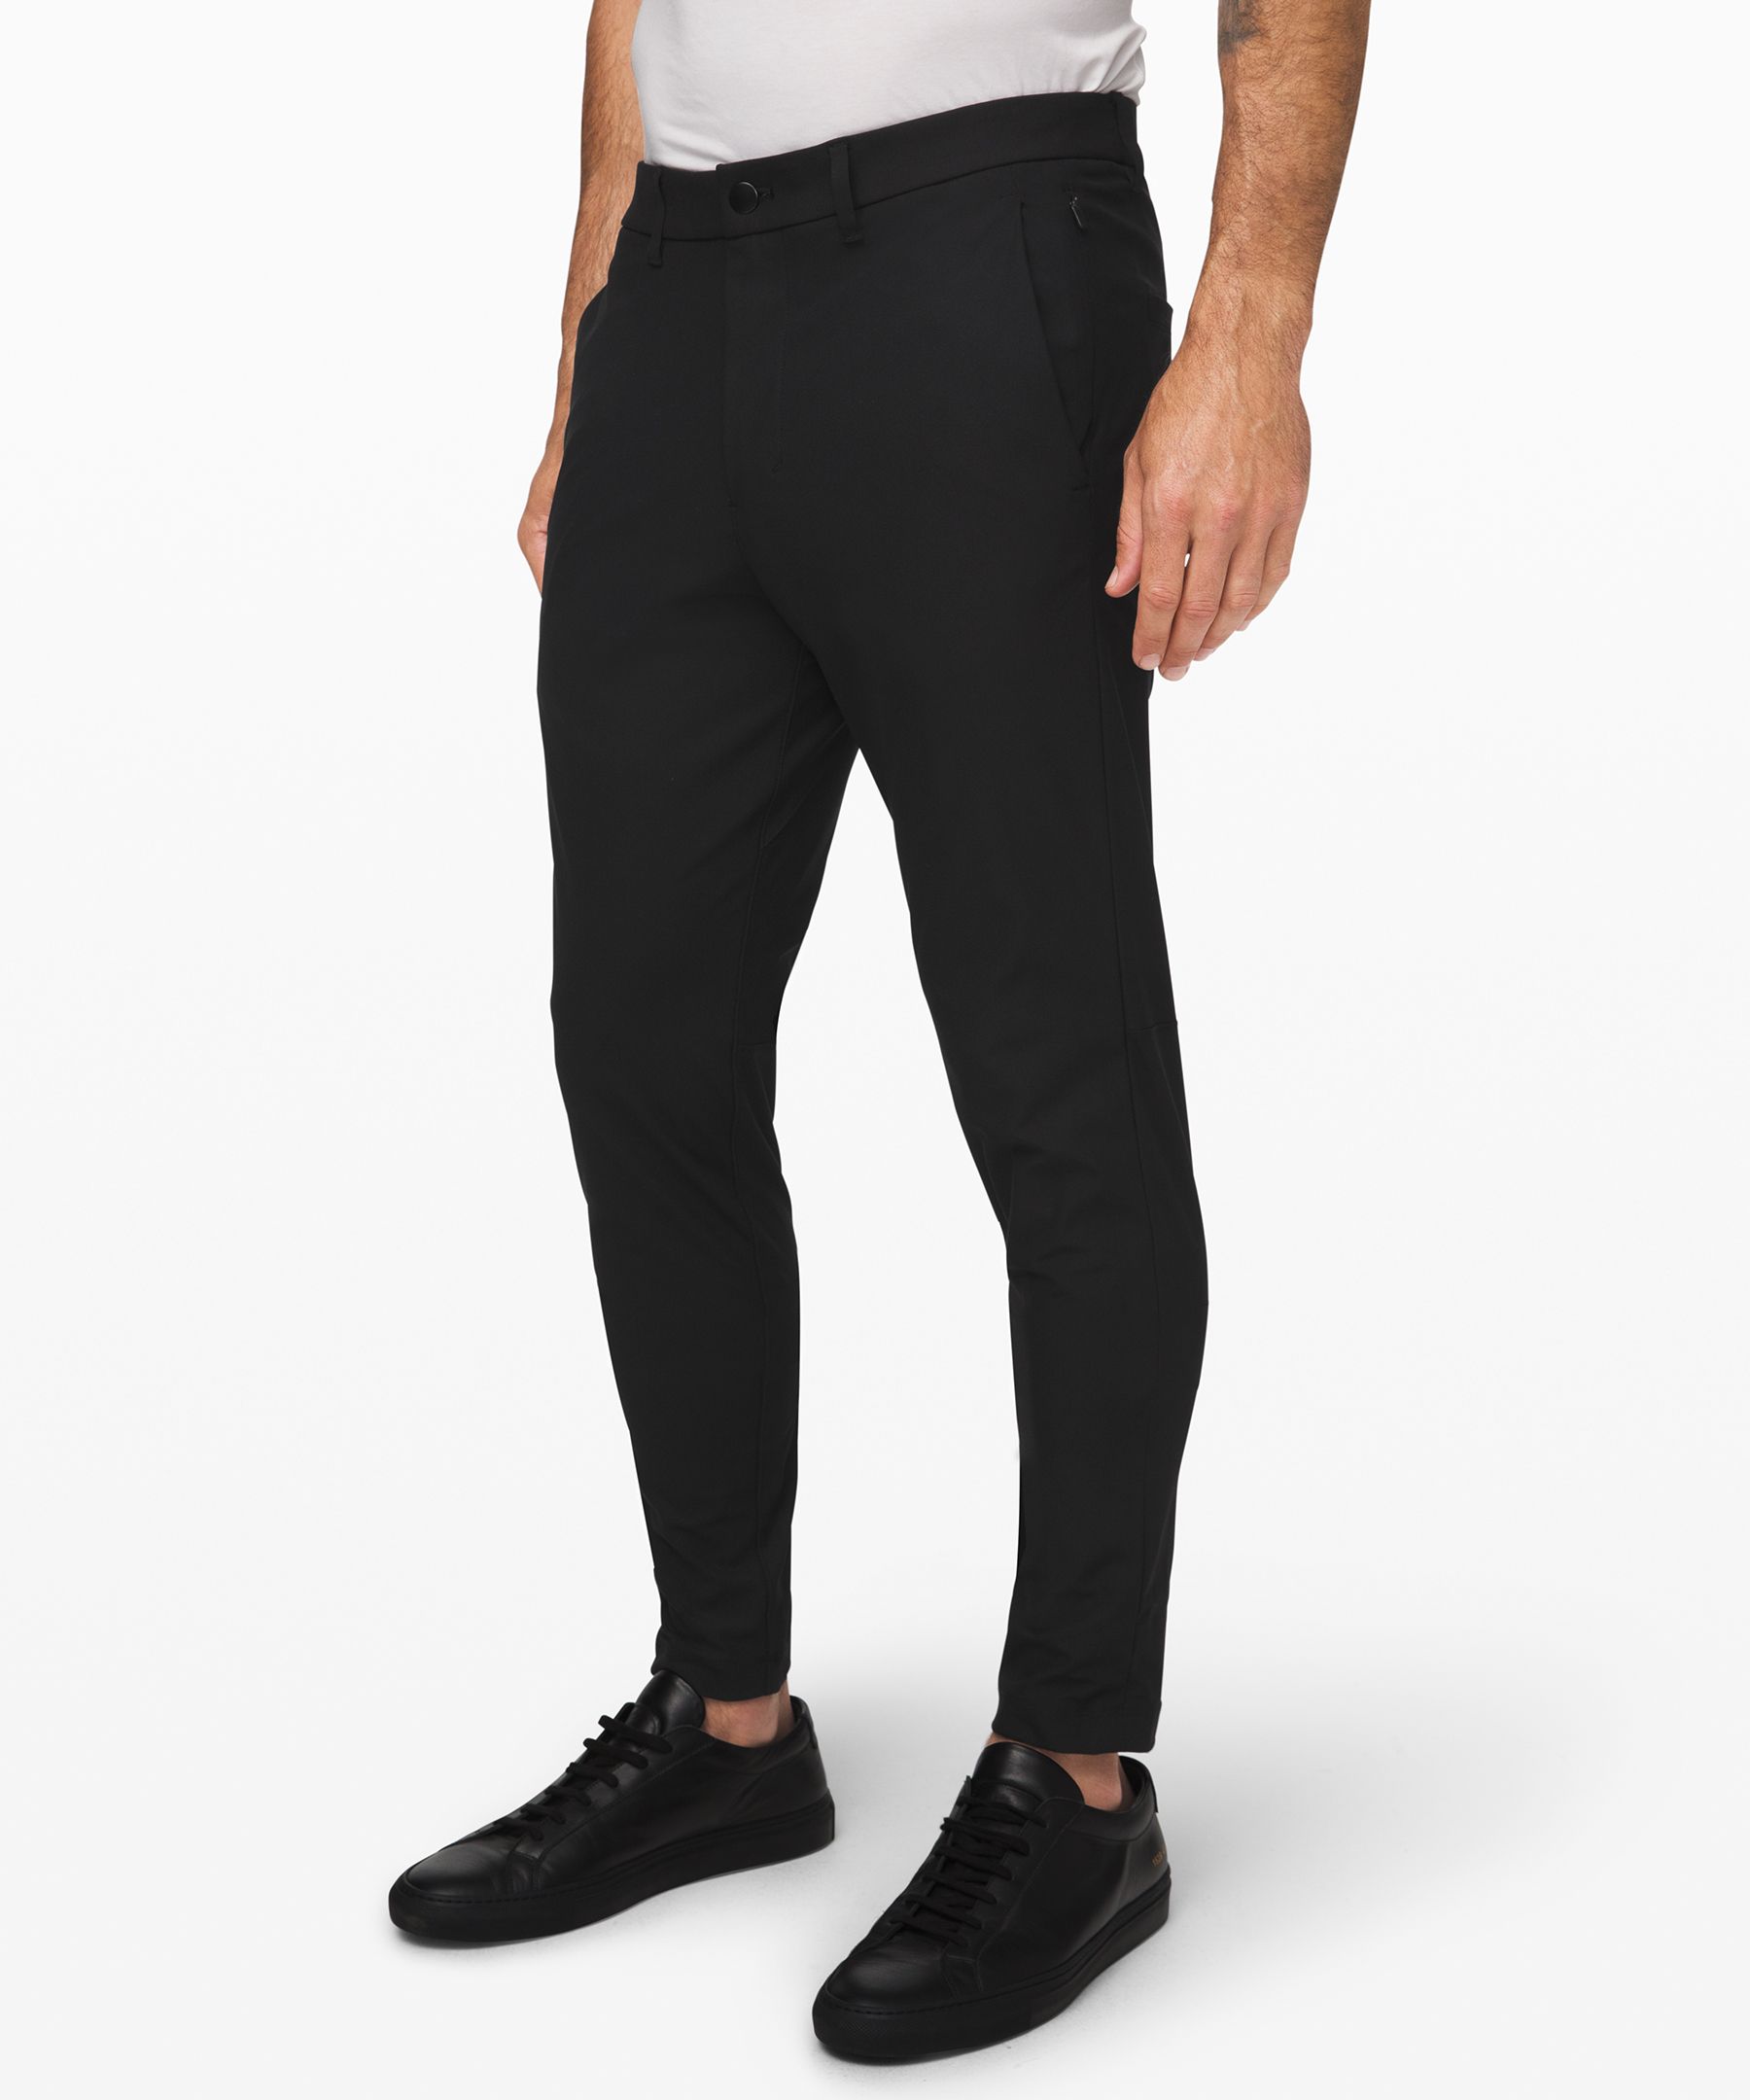 Lululemon Commission Skinny-fit Pants 34" Warpstreme In Black